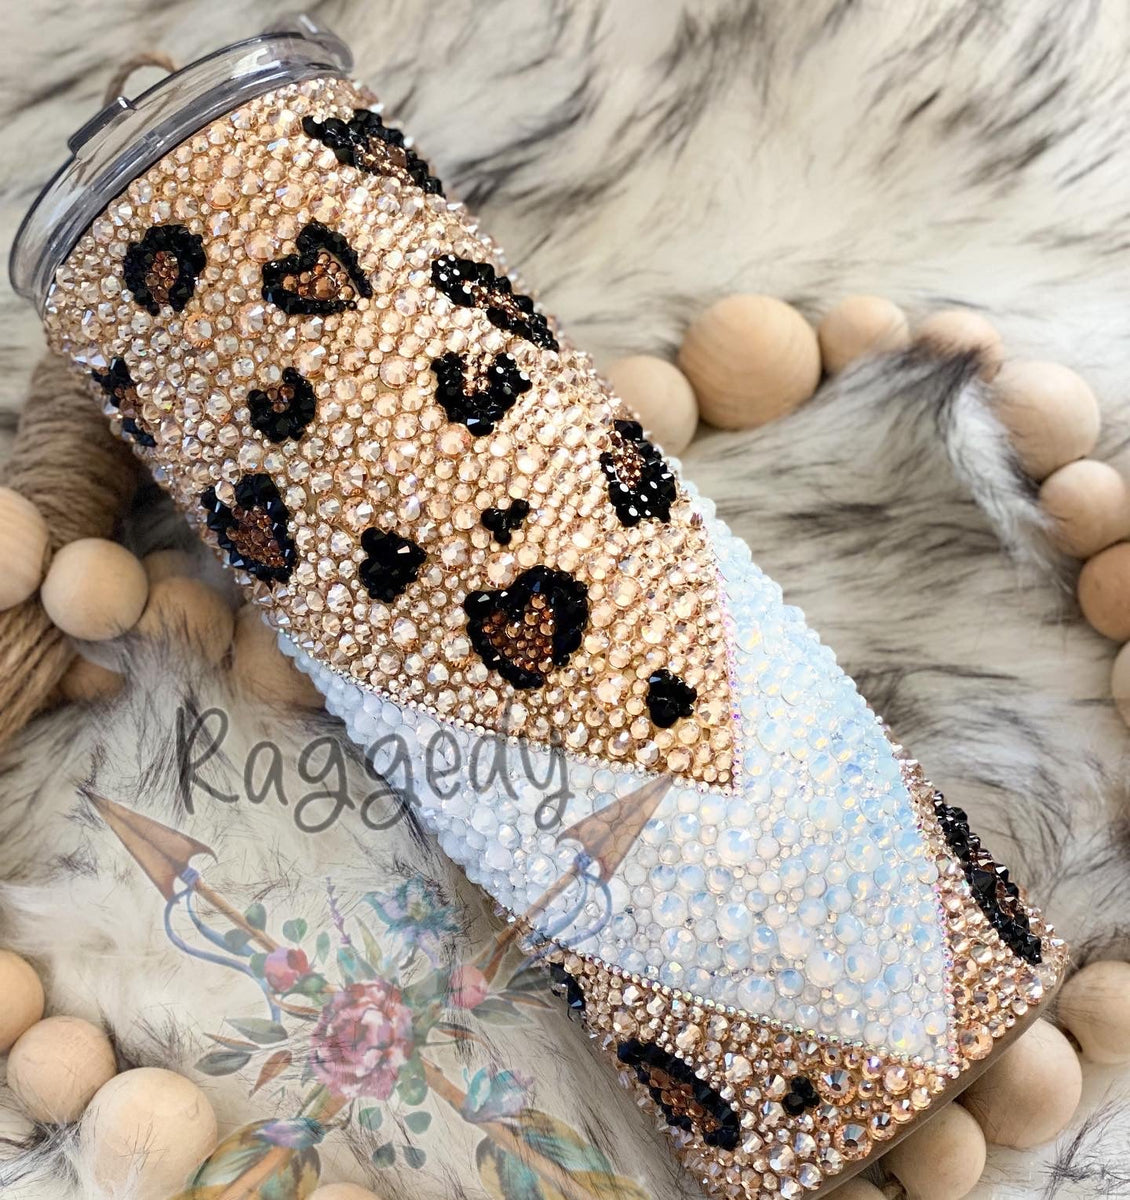 Leopard Lips Jeweled Glassware